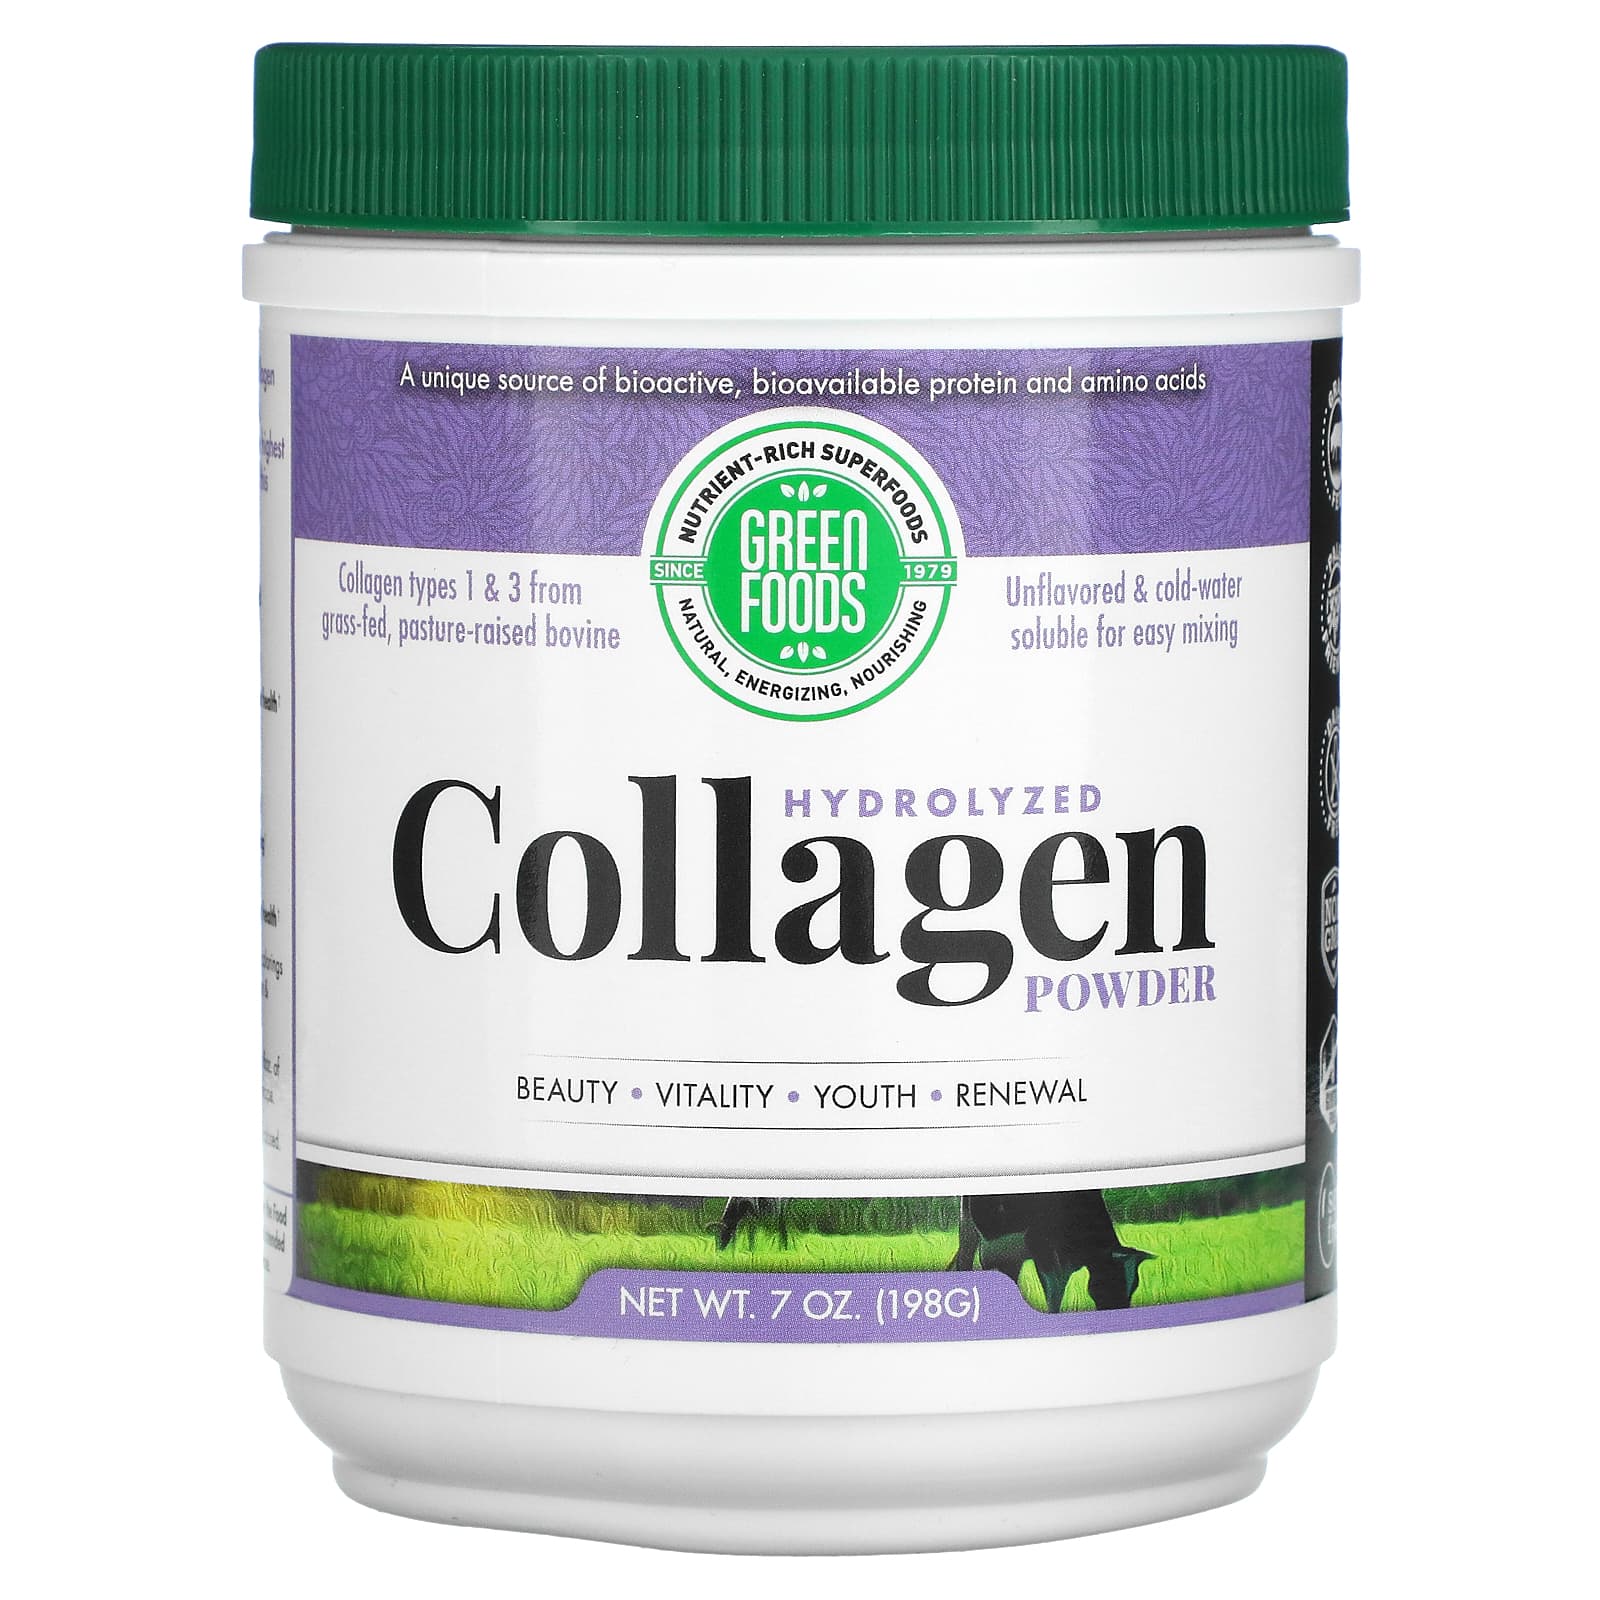 Collageno Polvo 300g - Colnatur - g a $997